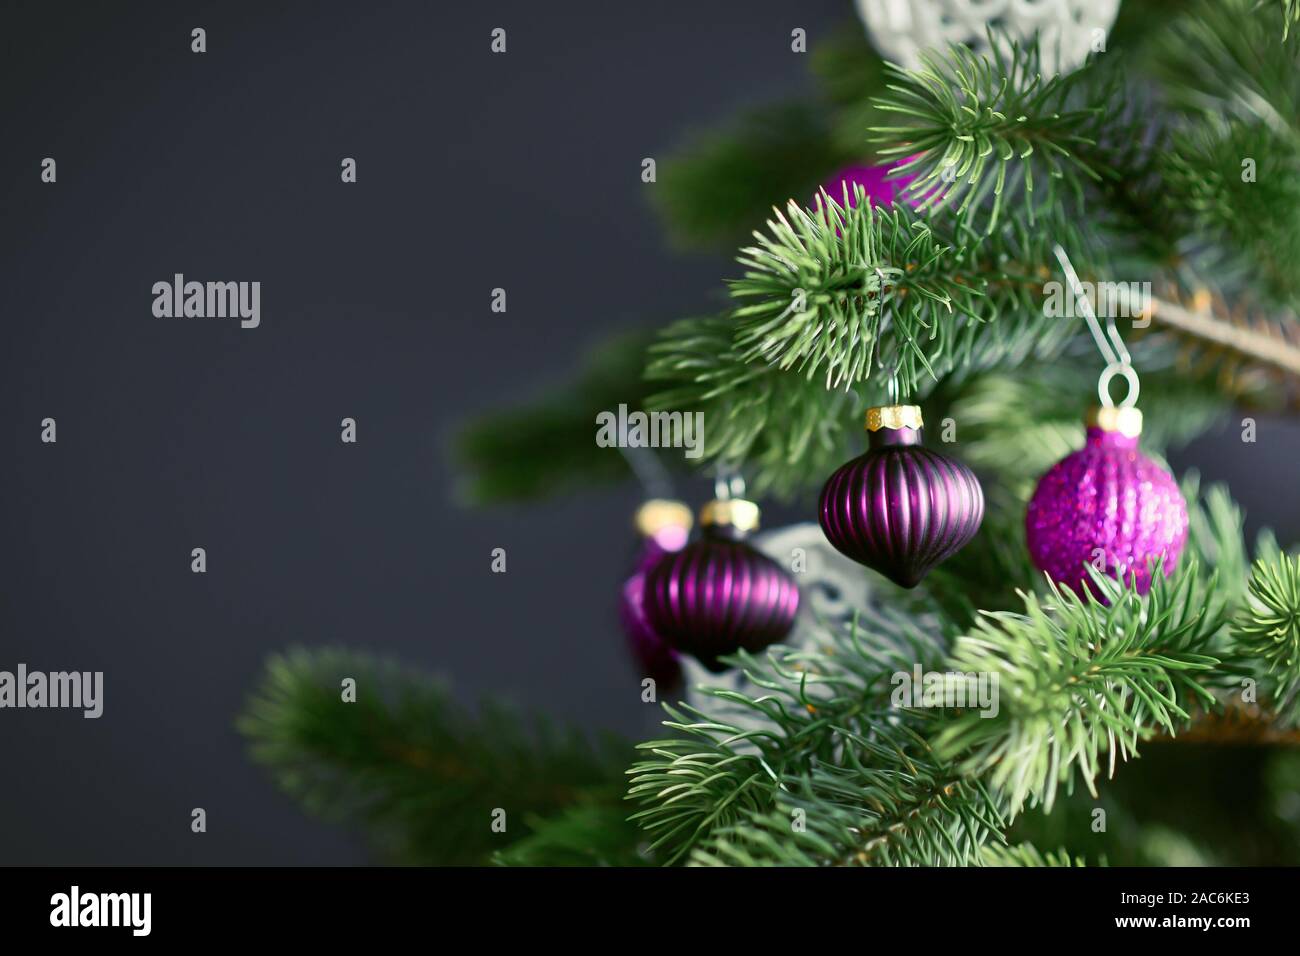 In der Nähe von schönen lila Glas baum Christbaumkugel mit geschmückten Weihnachtsbaum mit anderen saisonalen Baumschmuck auf dunklen schwarzen Hintergrund Stockfoto